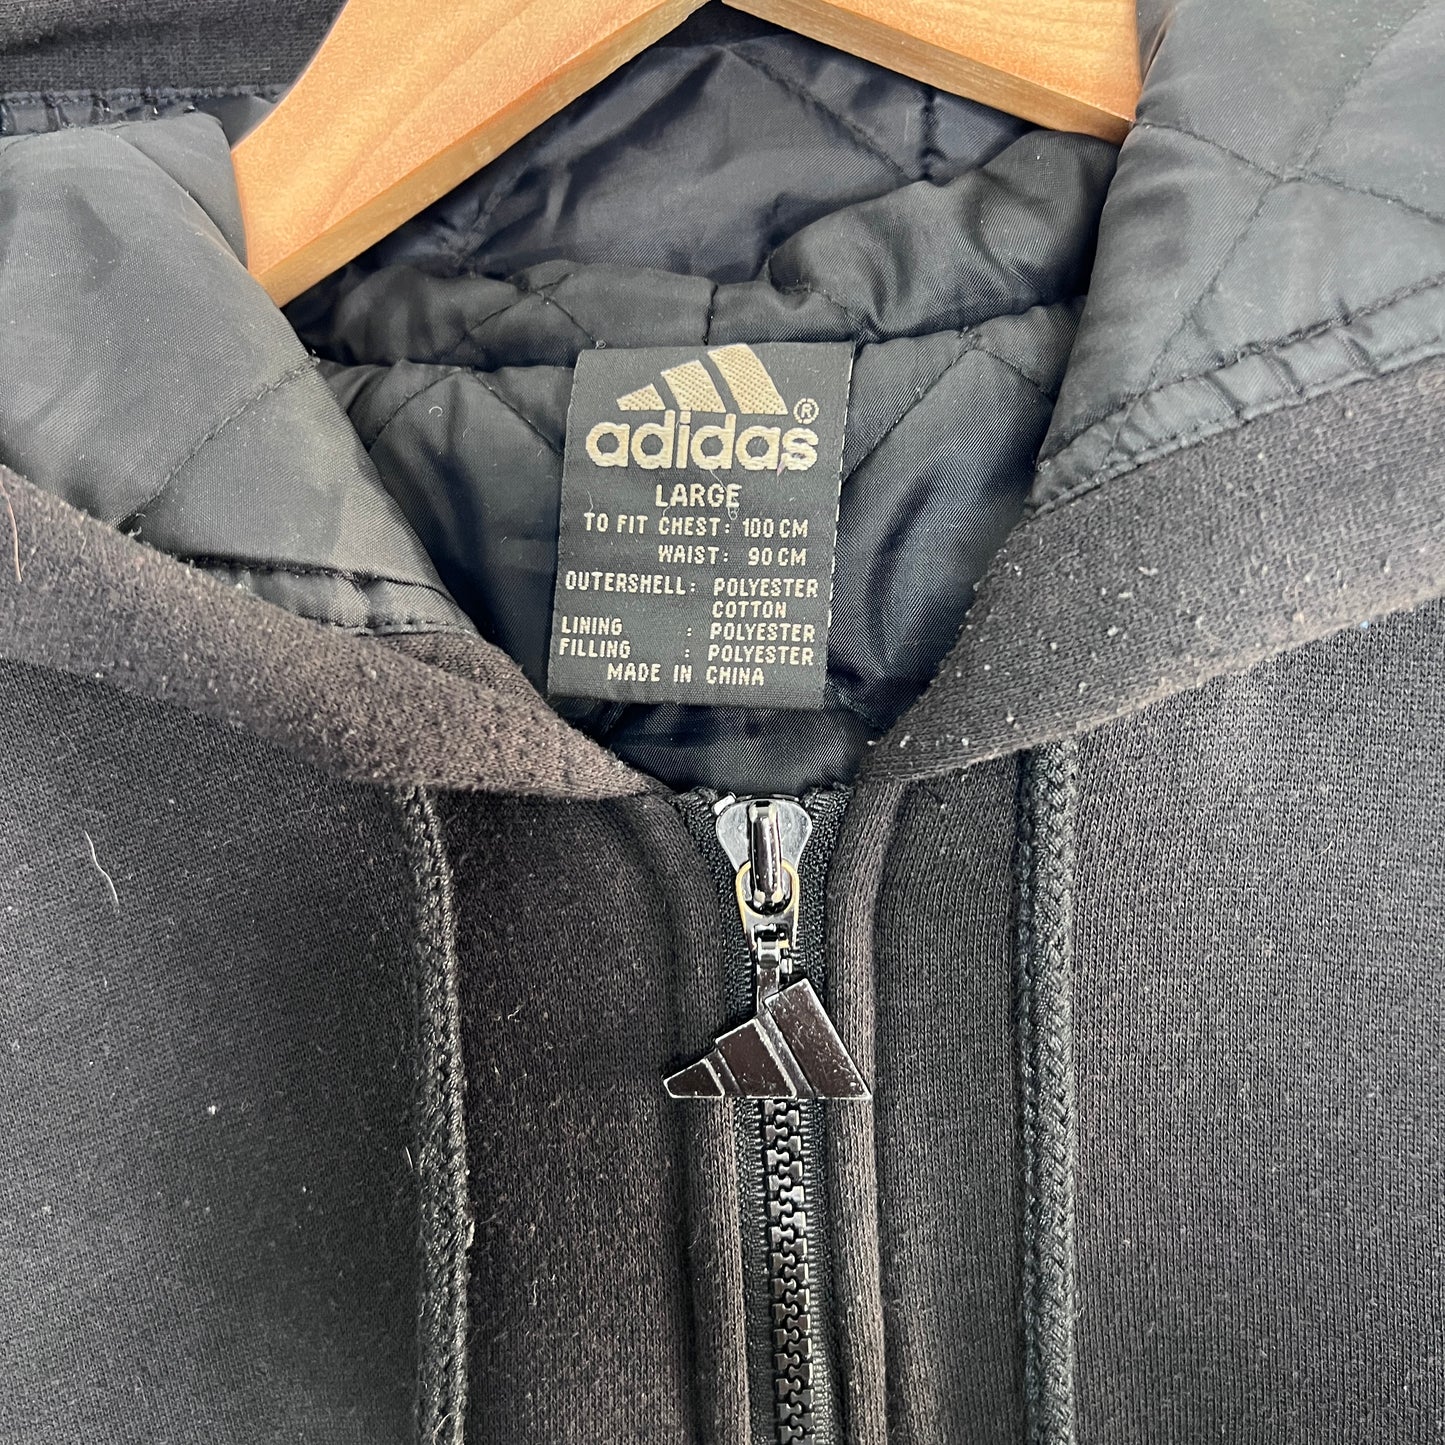 Vintage Black Adidas Jacket